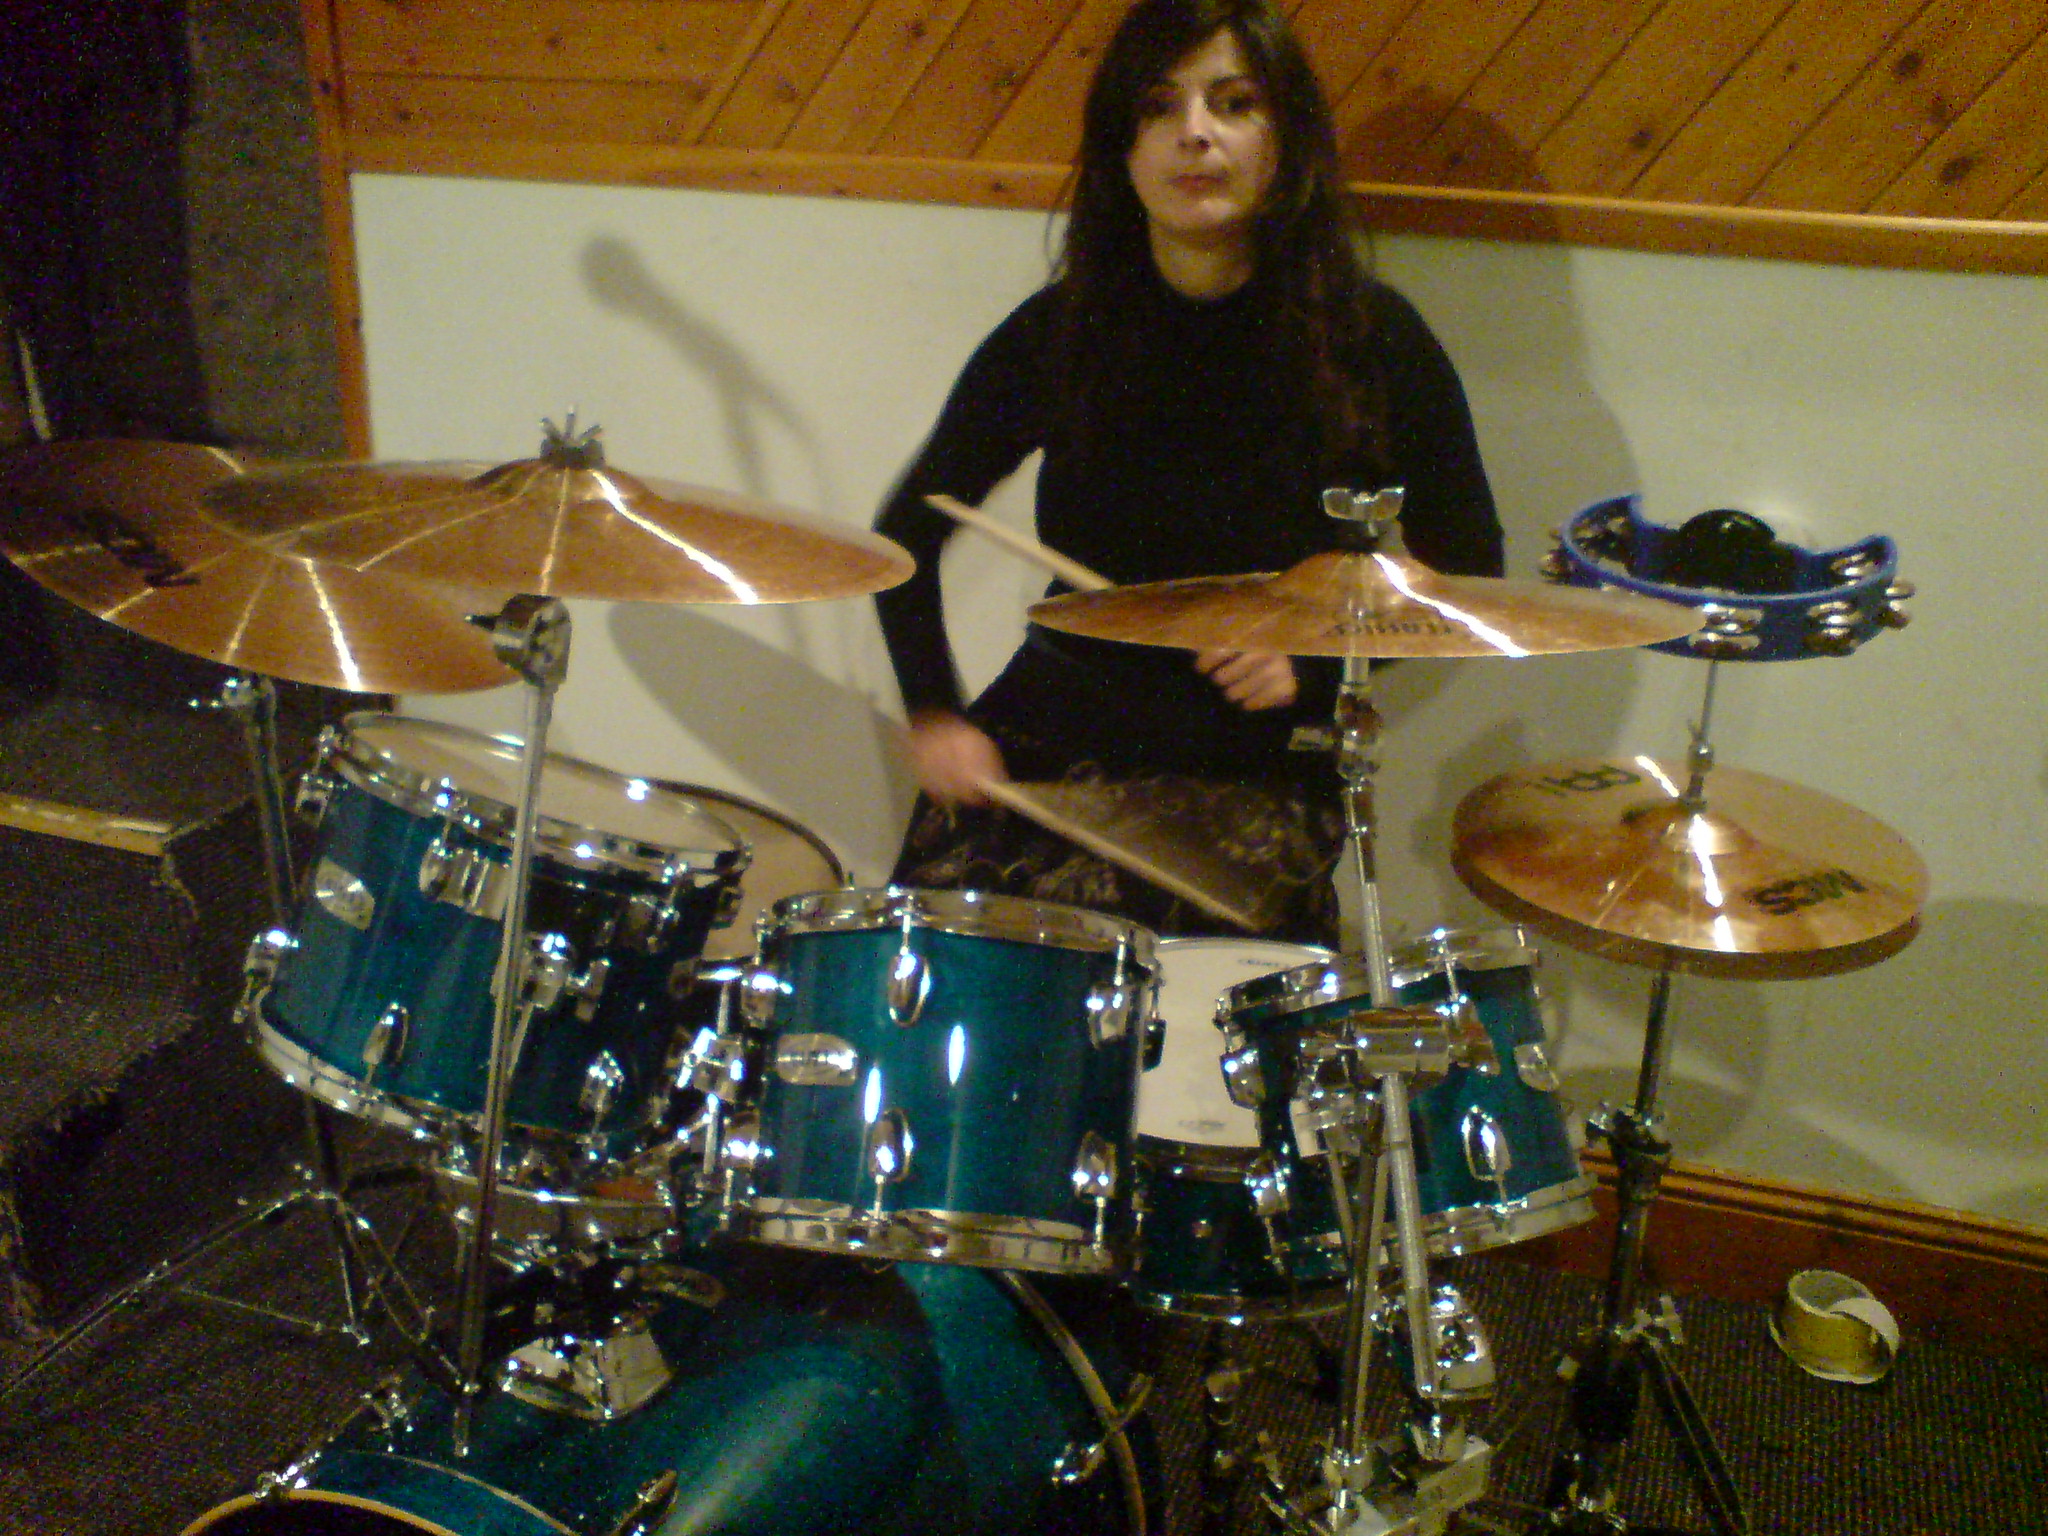 Francesca drumming in her studio.